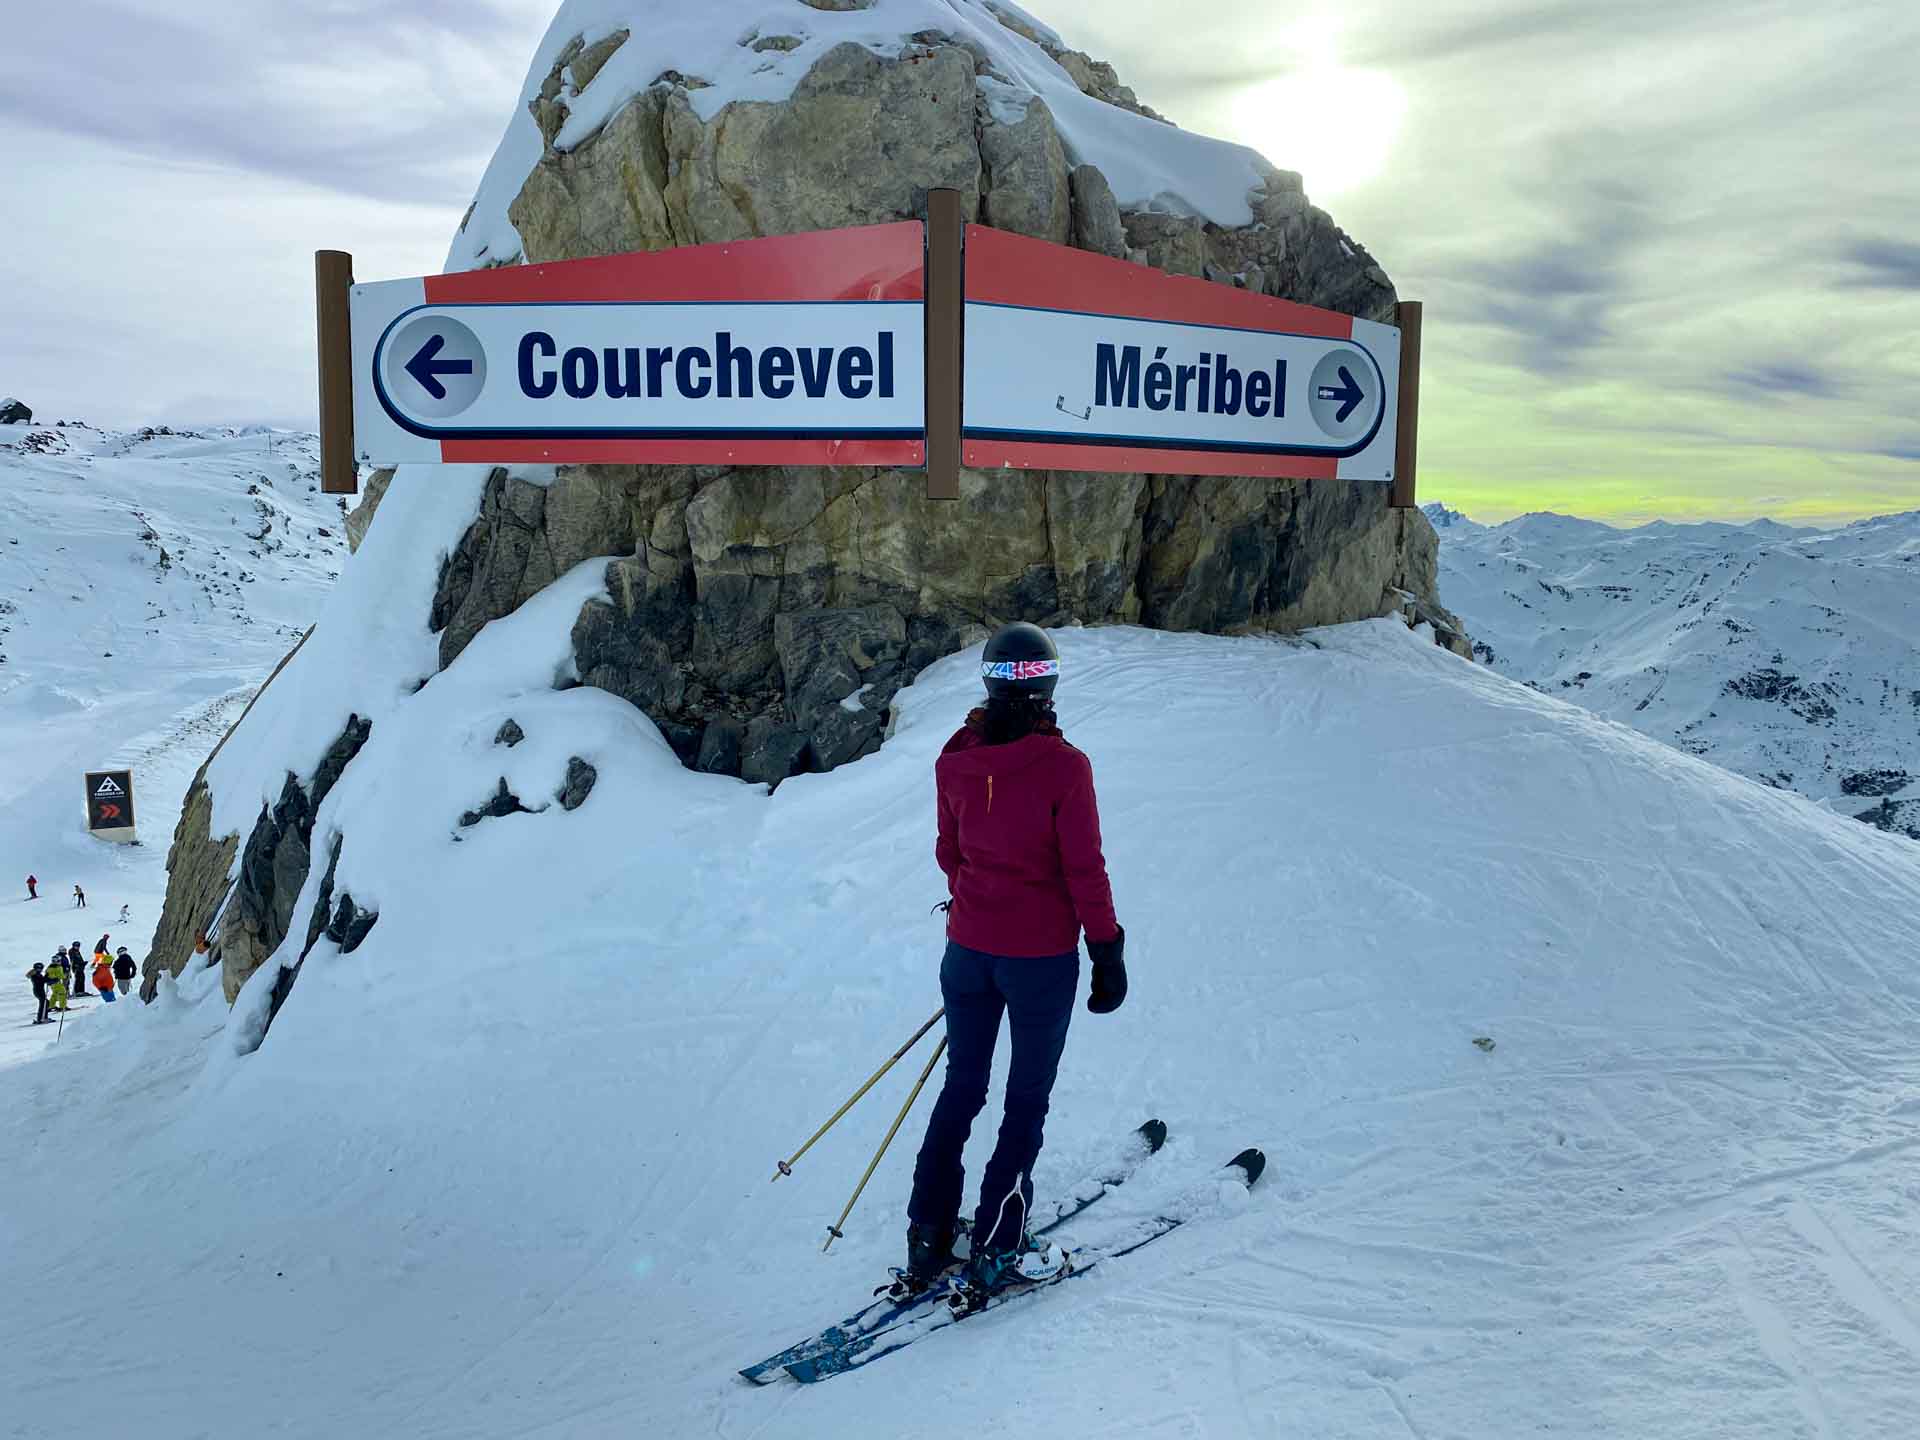 Carteles en 3 Valles indicando las estaciones de esquí de Meribel y Courchevel